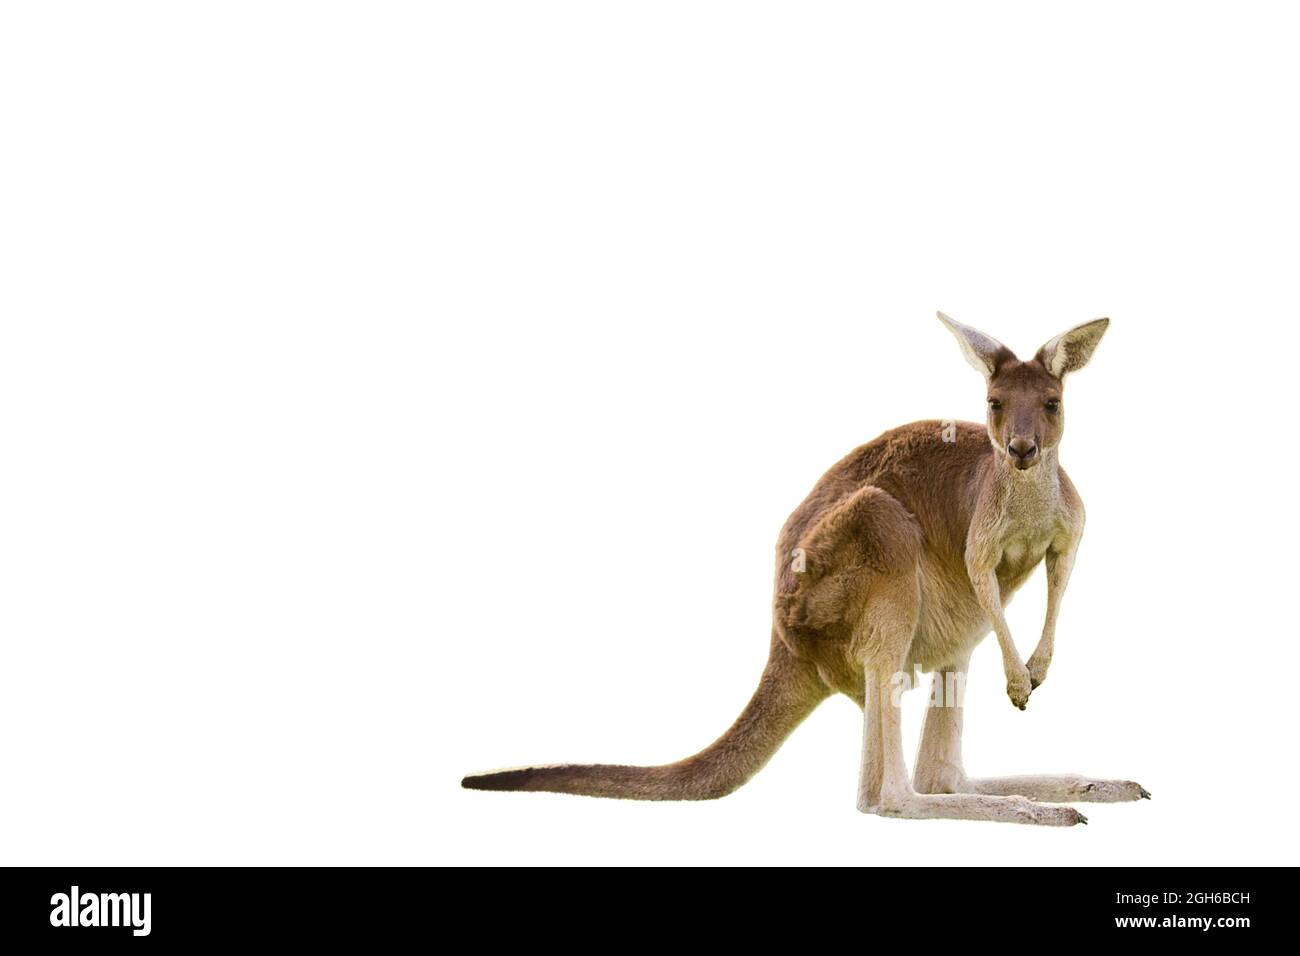 Bel canguro in piedi in posizione allerta SU SFONDO BIANCO CON SPAZIO COPIA isolato, bianco, Perth, Australia occidentale, Australia Foto Stock